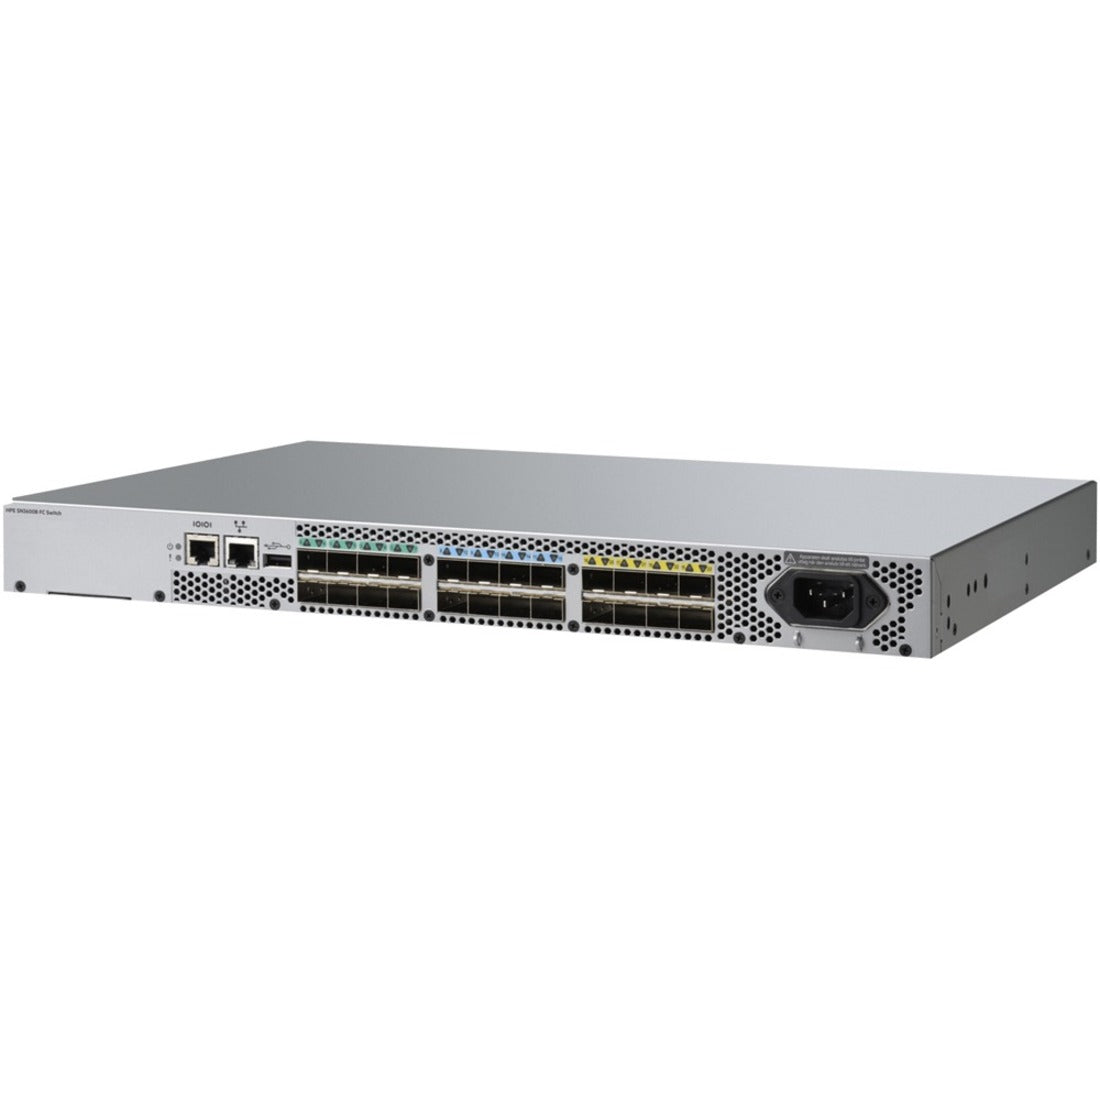 HPE R4G55B SN3600B 16Gb 24/8 8p SW SFP+ FC Switch, High-Speed Fibre Channel Connectivity